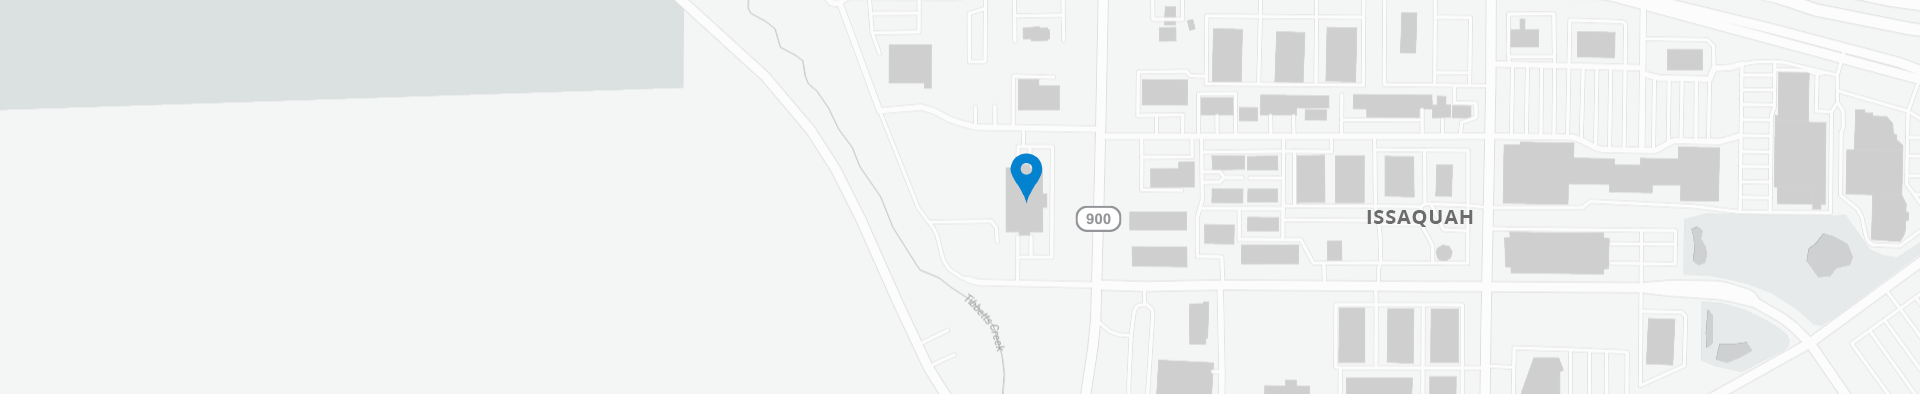 谷歌地图1740 NW Maple St，Issaquah，98027